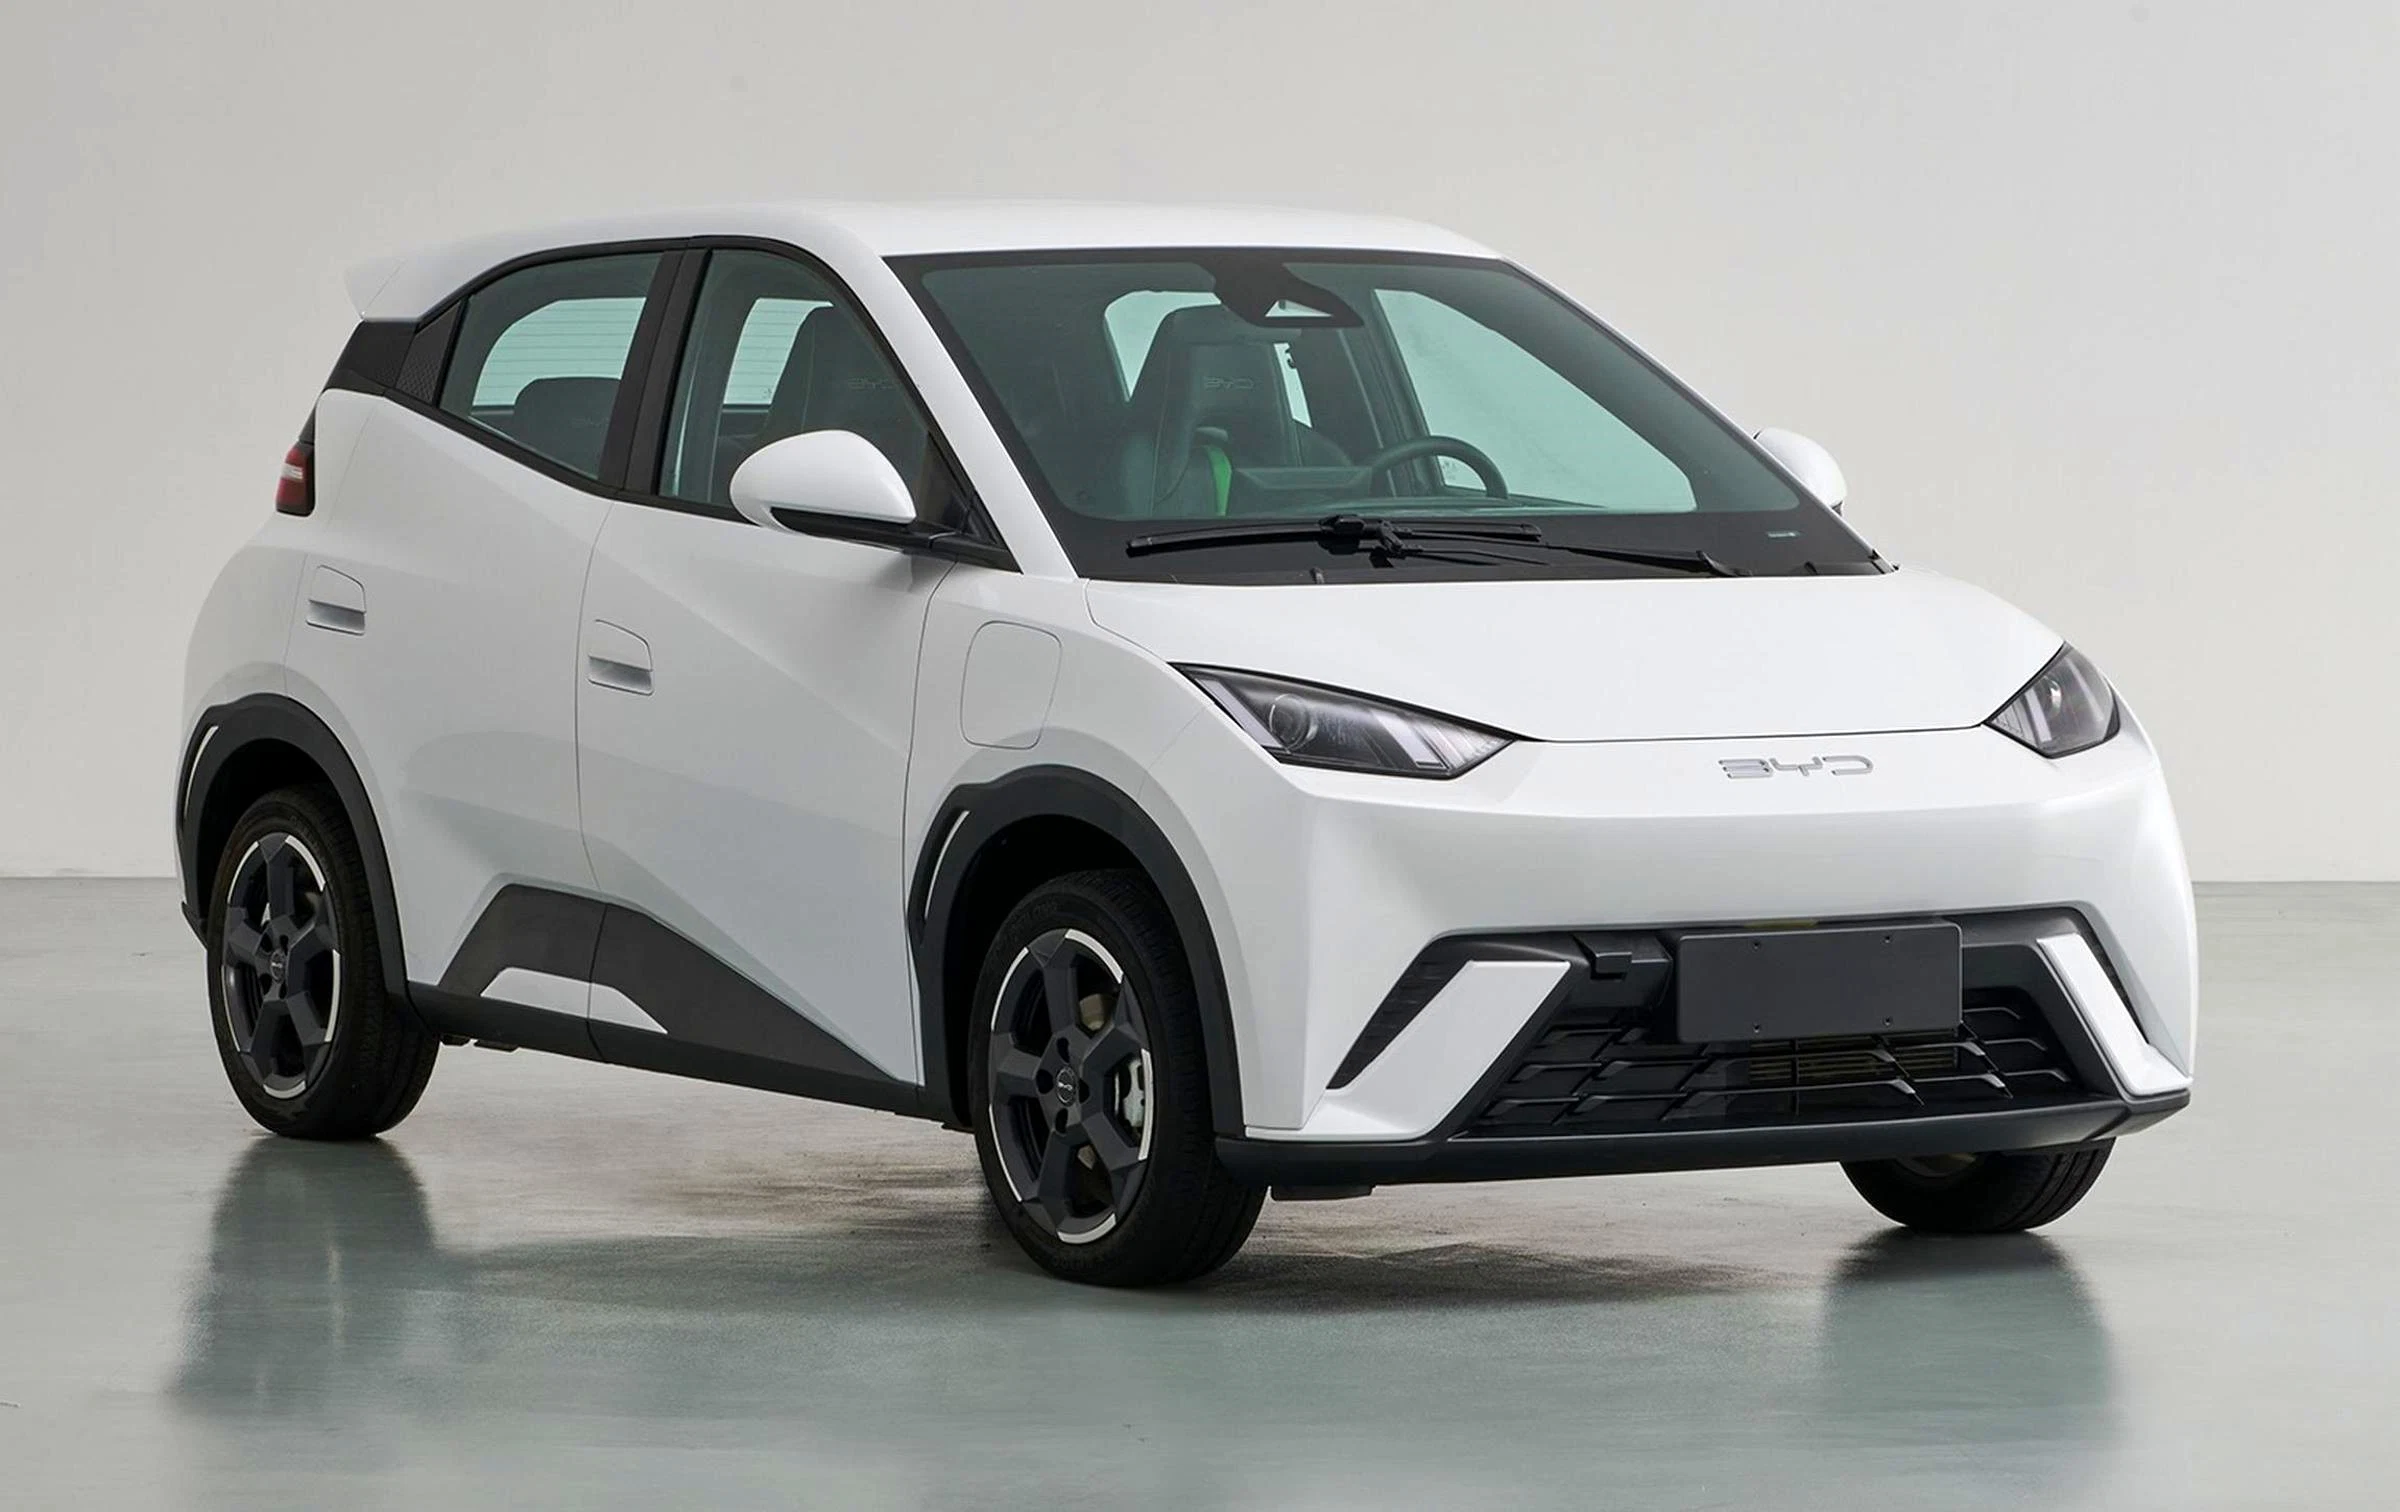 2023 Byd Gaviota Coche nuevo coche eléctrico de alta calidad fabricado en China EV eléctrico coche chino de automóviles nuevos automóviles eléctricos energía